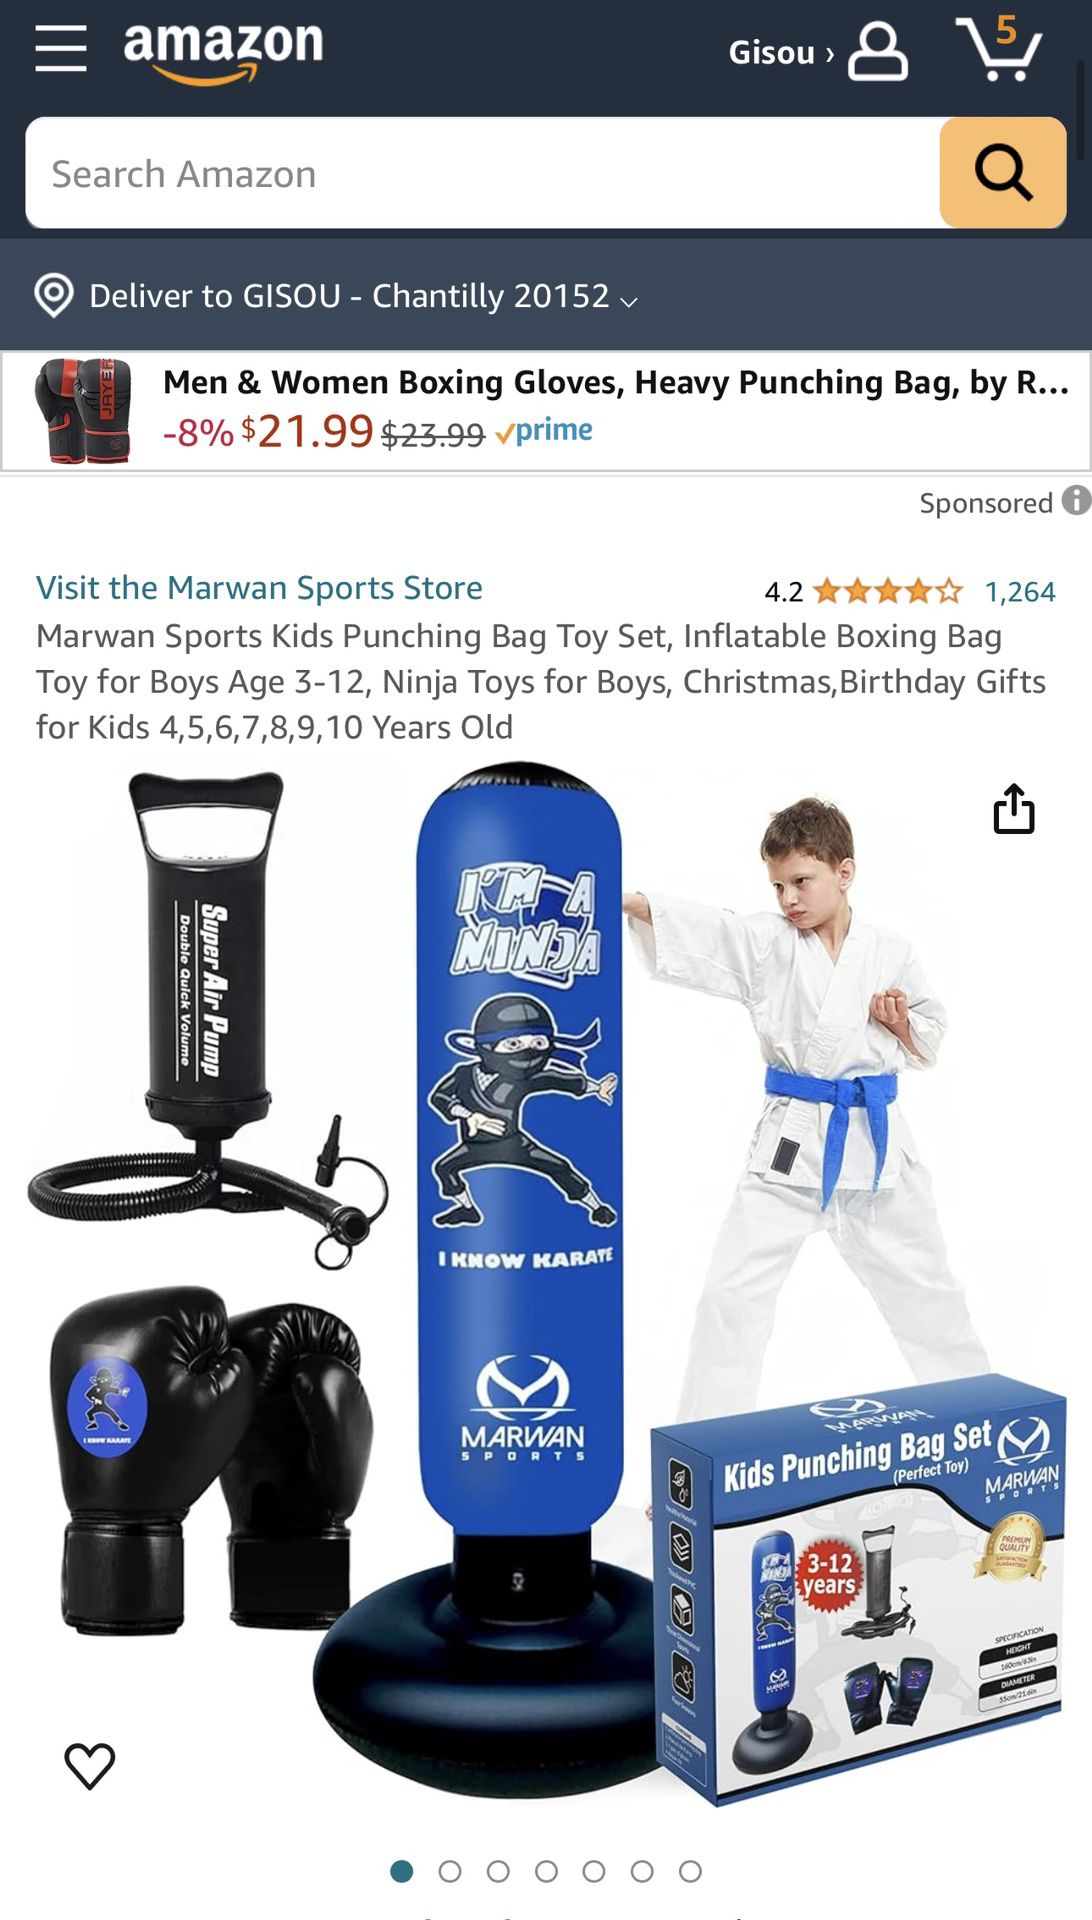 Marwan Sports Kids Punching Bag Set